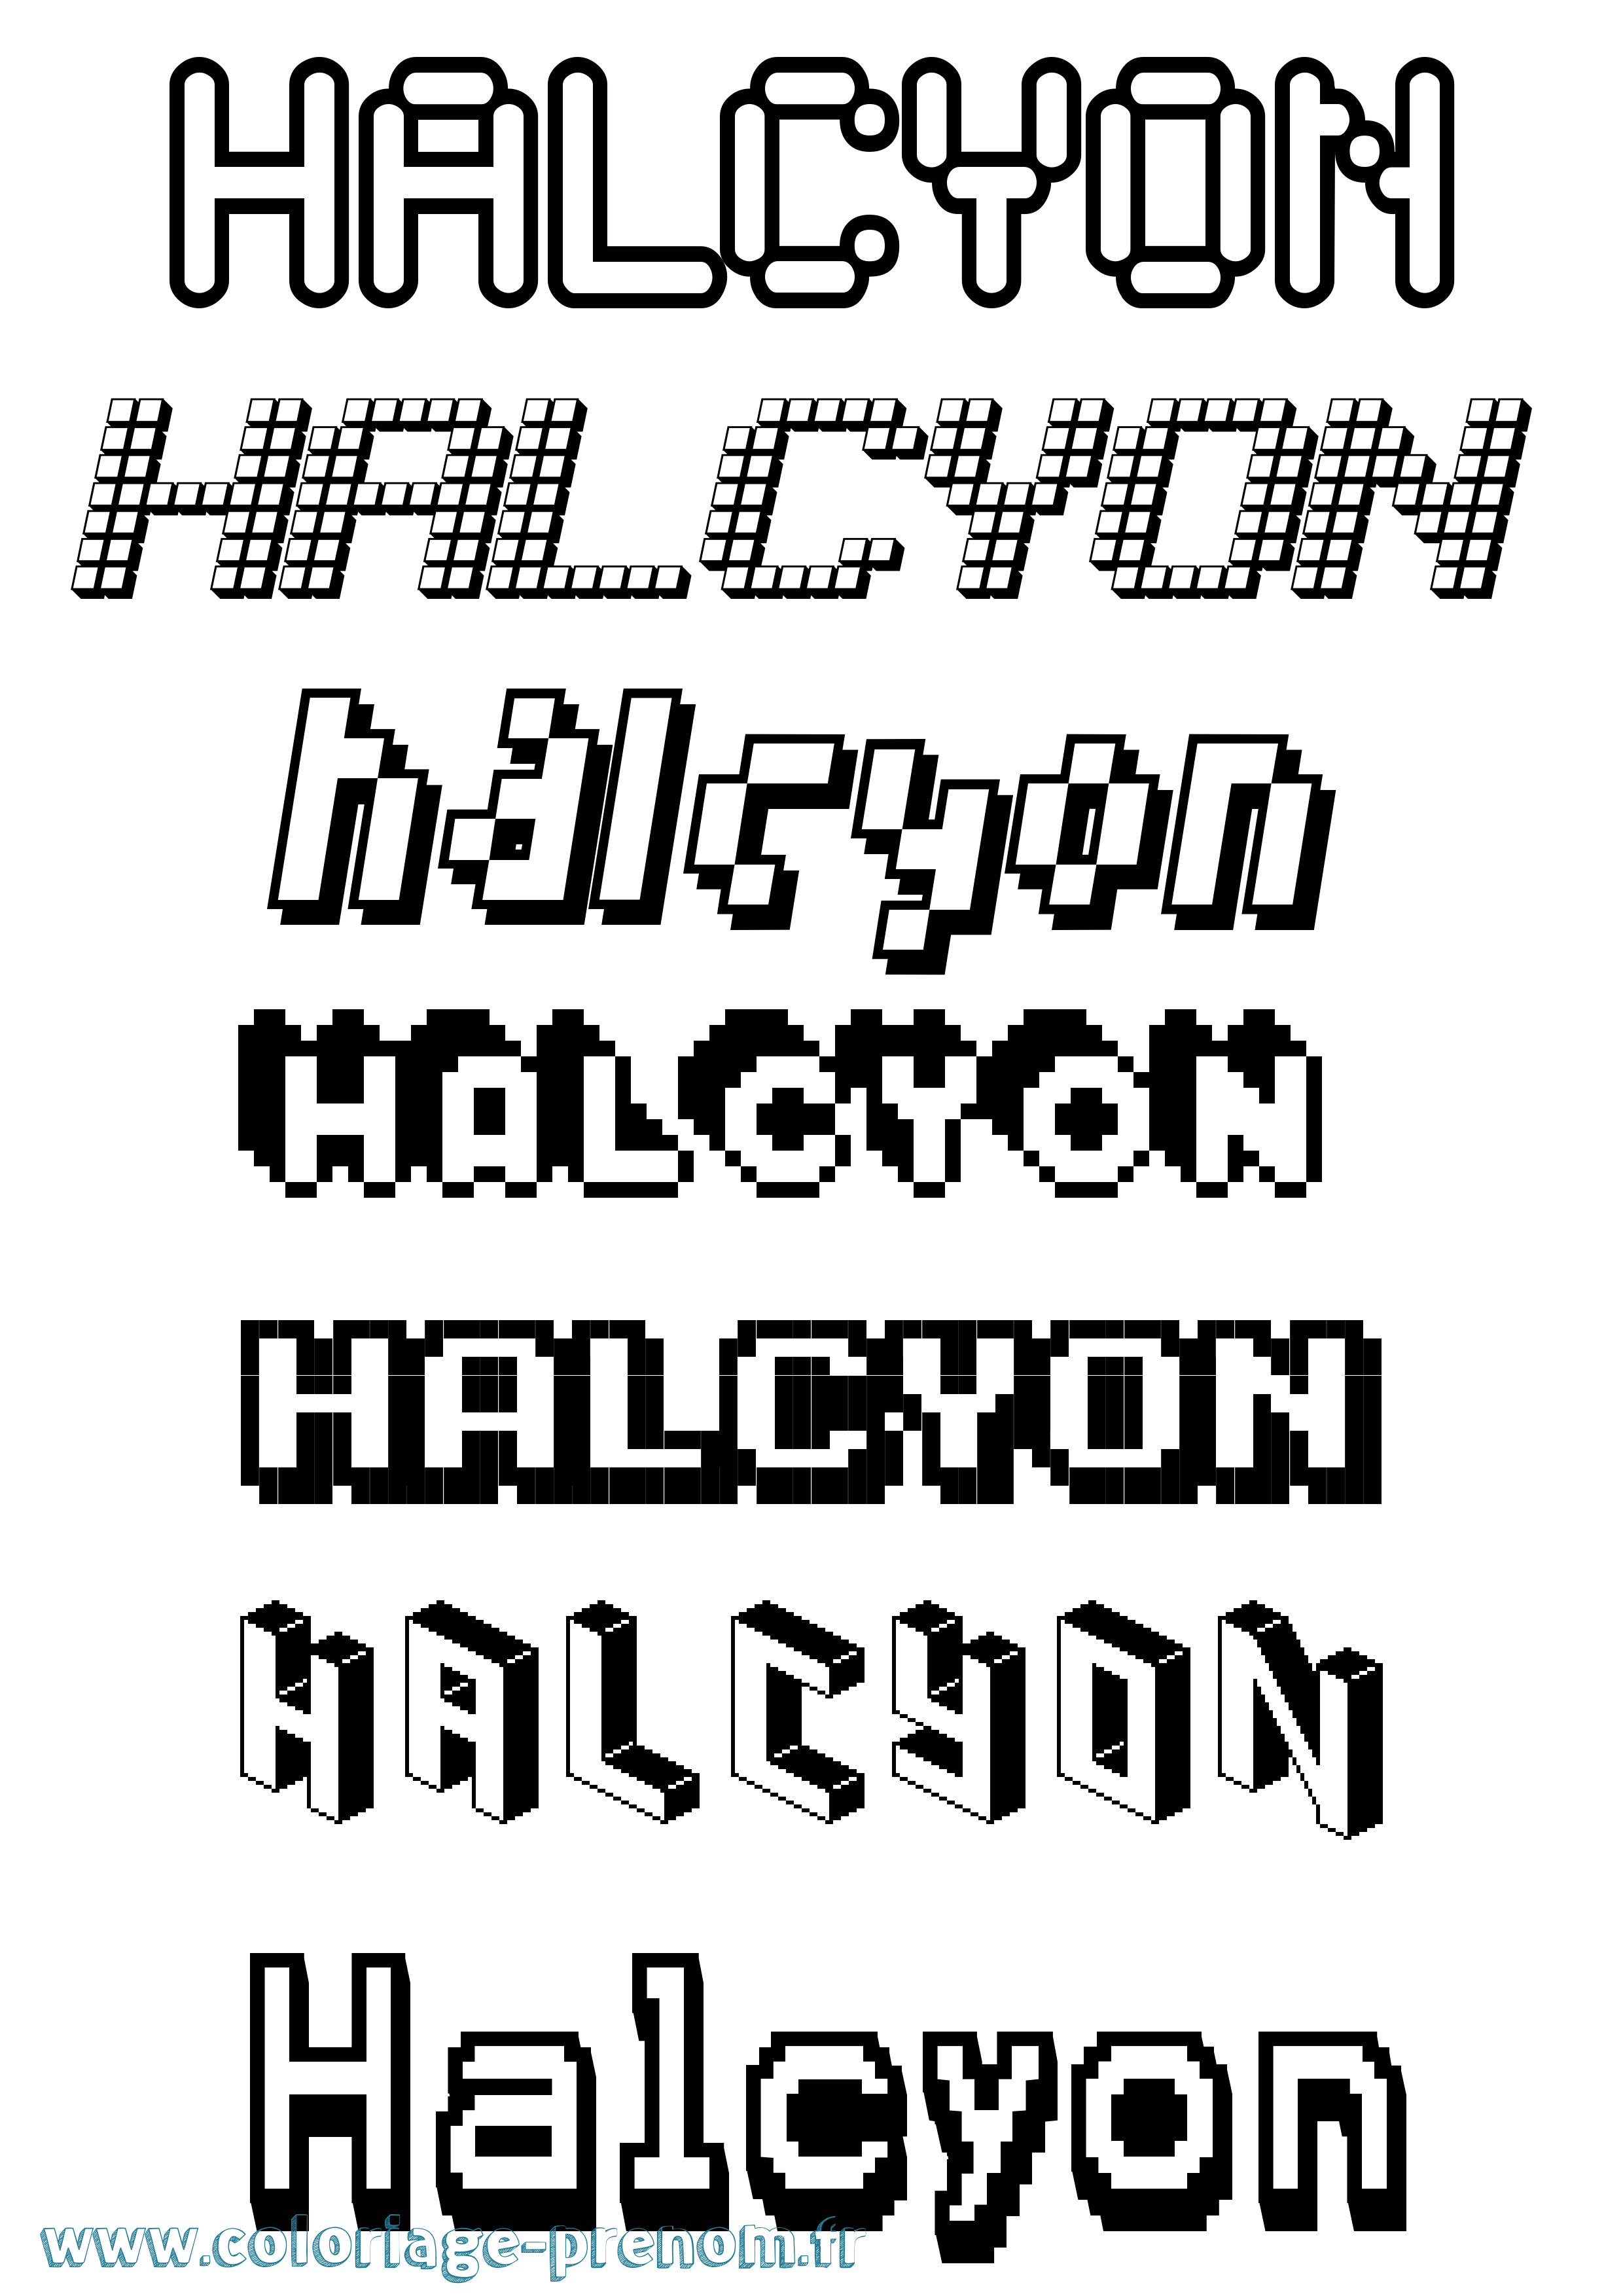 Coloriage prénom Halcyon Pixel